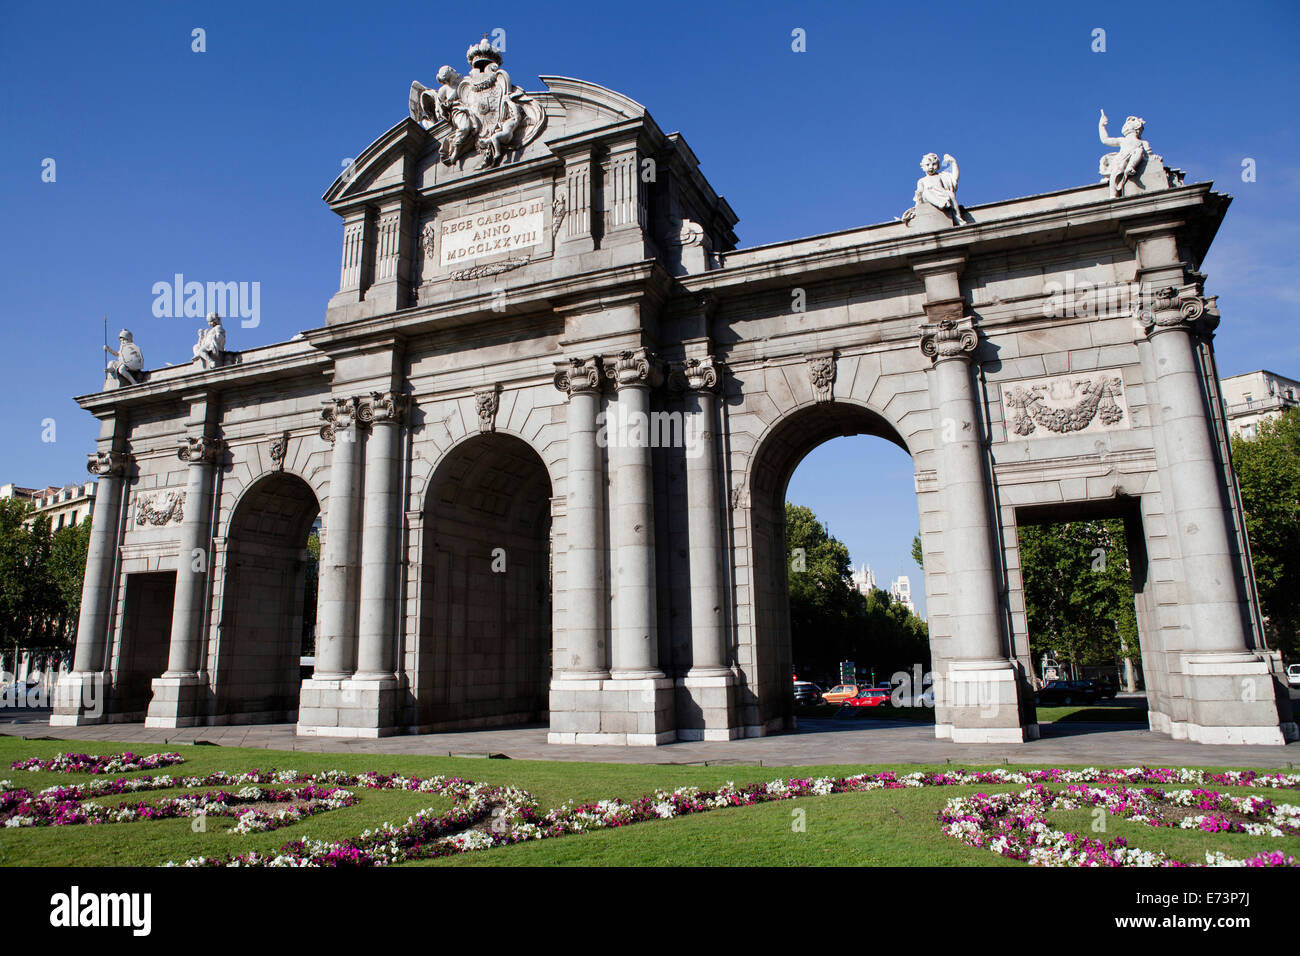 España, Madrid, Puerto de Alcalá, un monumento neoclásico de la ciudad, en la Plaza de la Independencia, la Plaza de la independencia. Foto de stock